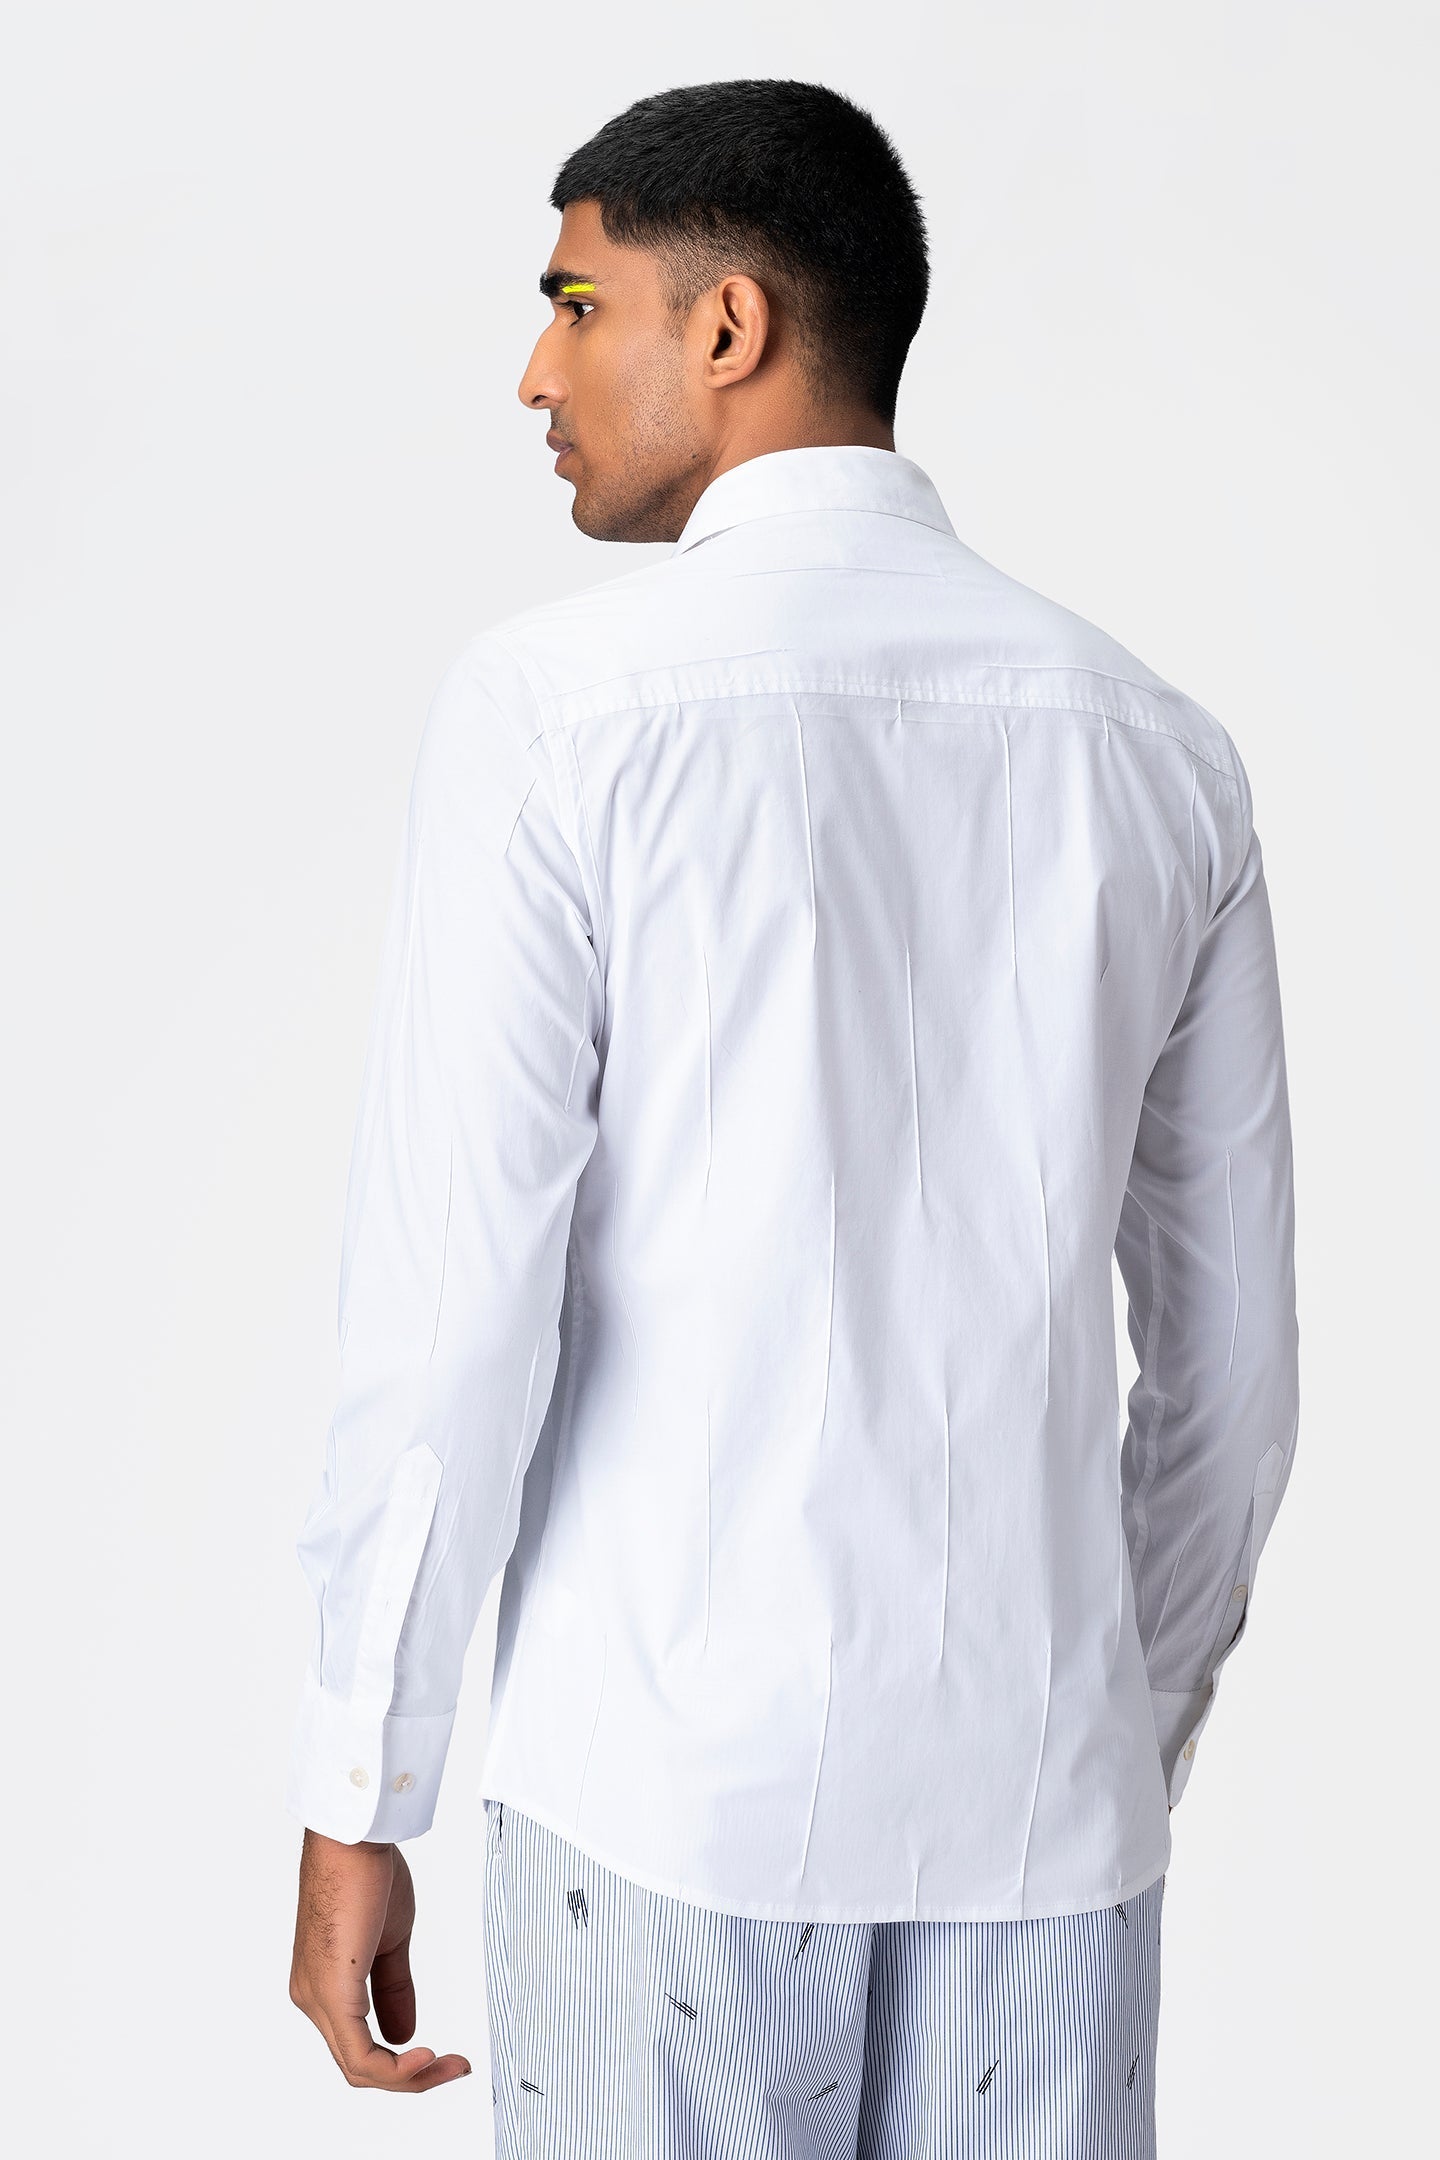 full-sleeved-shirt - Genes online store 2020